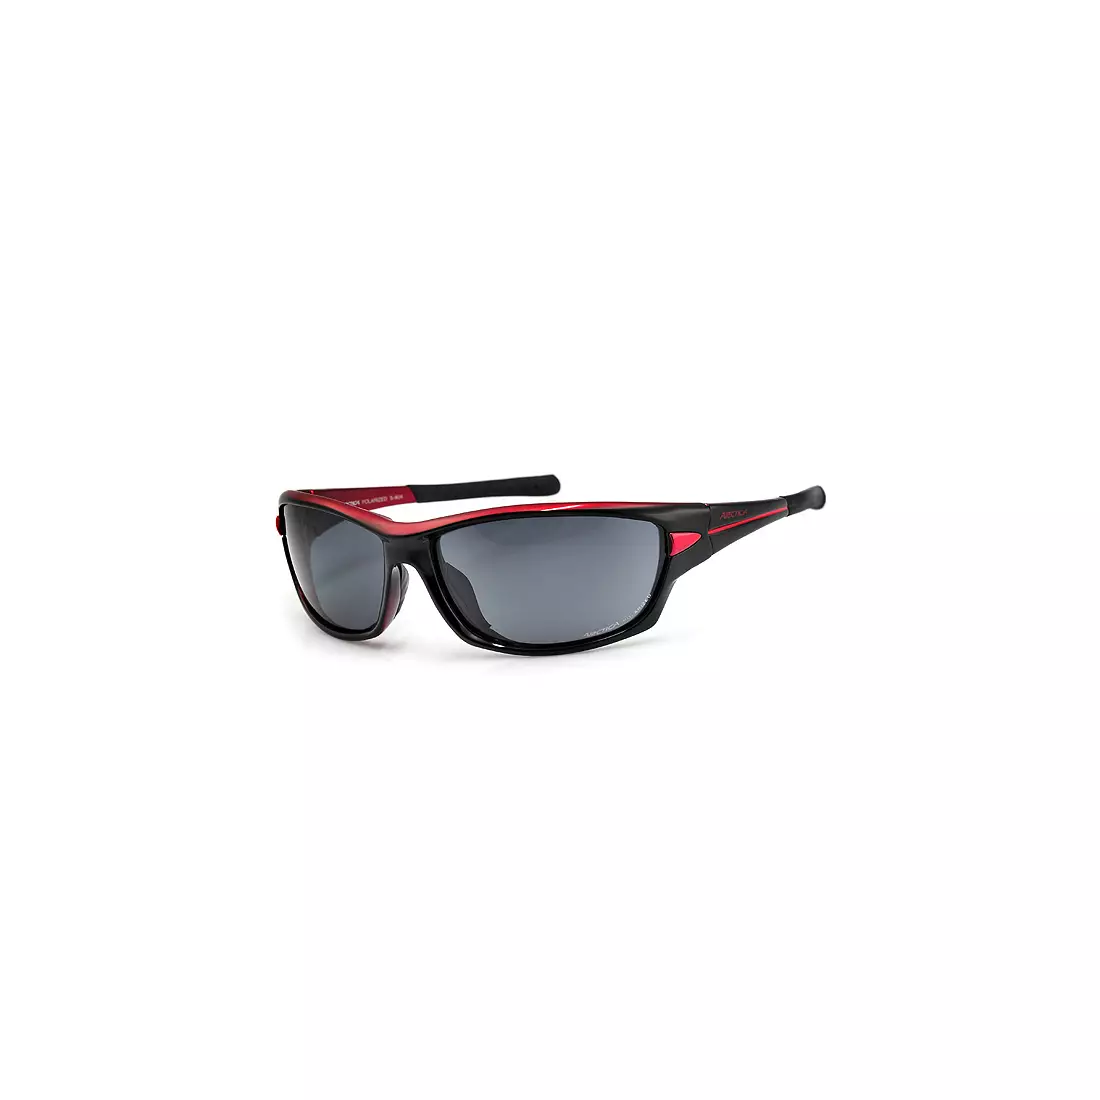 Sportovní brýle ARCTICA S-90A - barva: Černá a červená